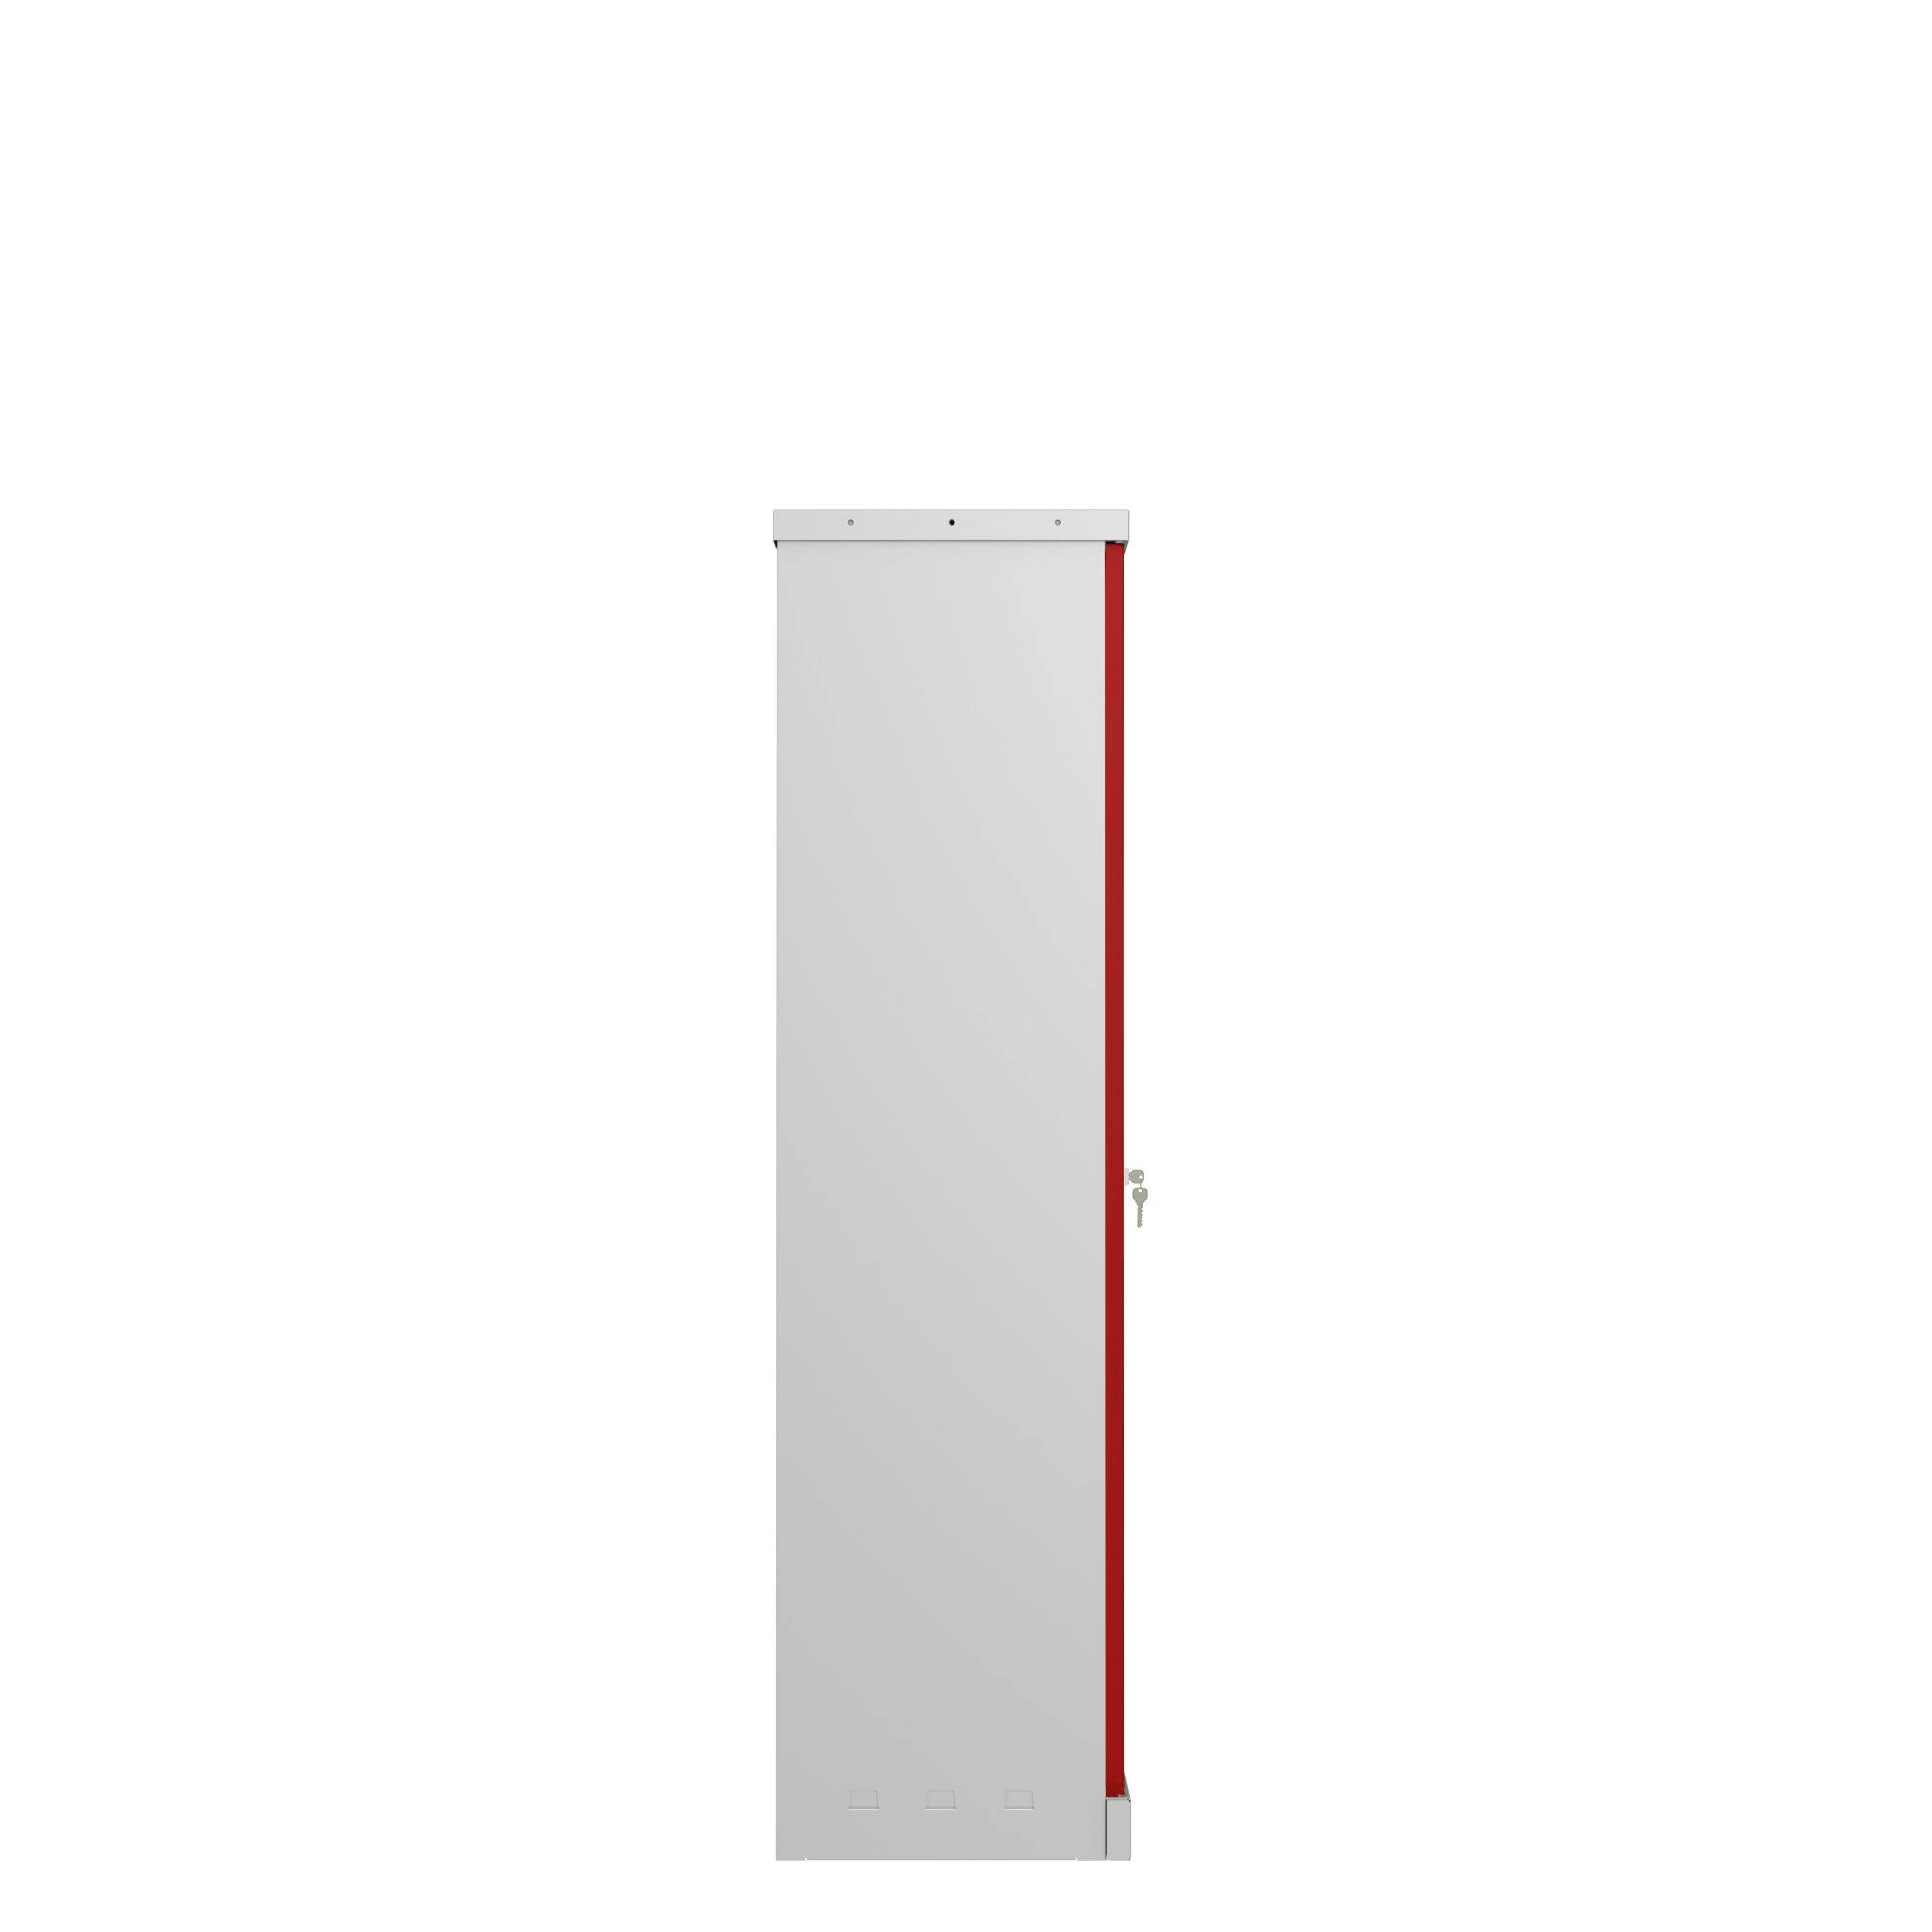 Der Phoenix Aktenschrank SCL1491GRK aus Stahl mit 2 Türen und 3 Regalen,  grauer Korpus und rote Türen mit Schlüsselschloss | METRO Marktplatz